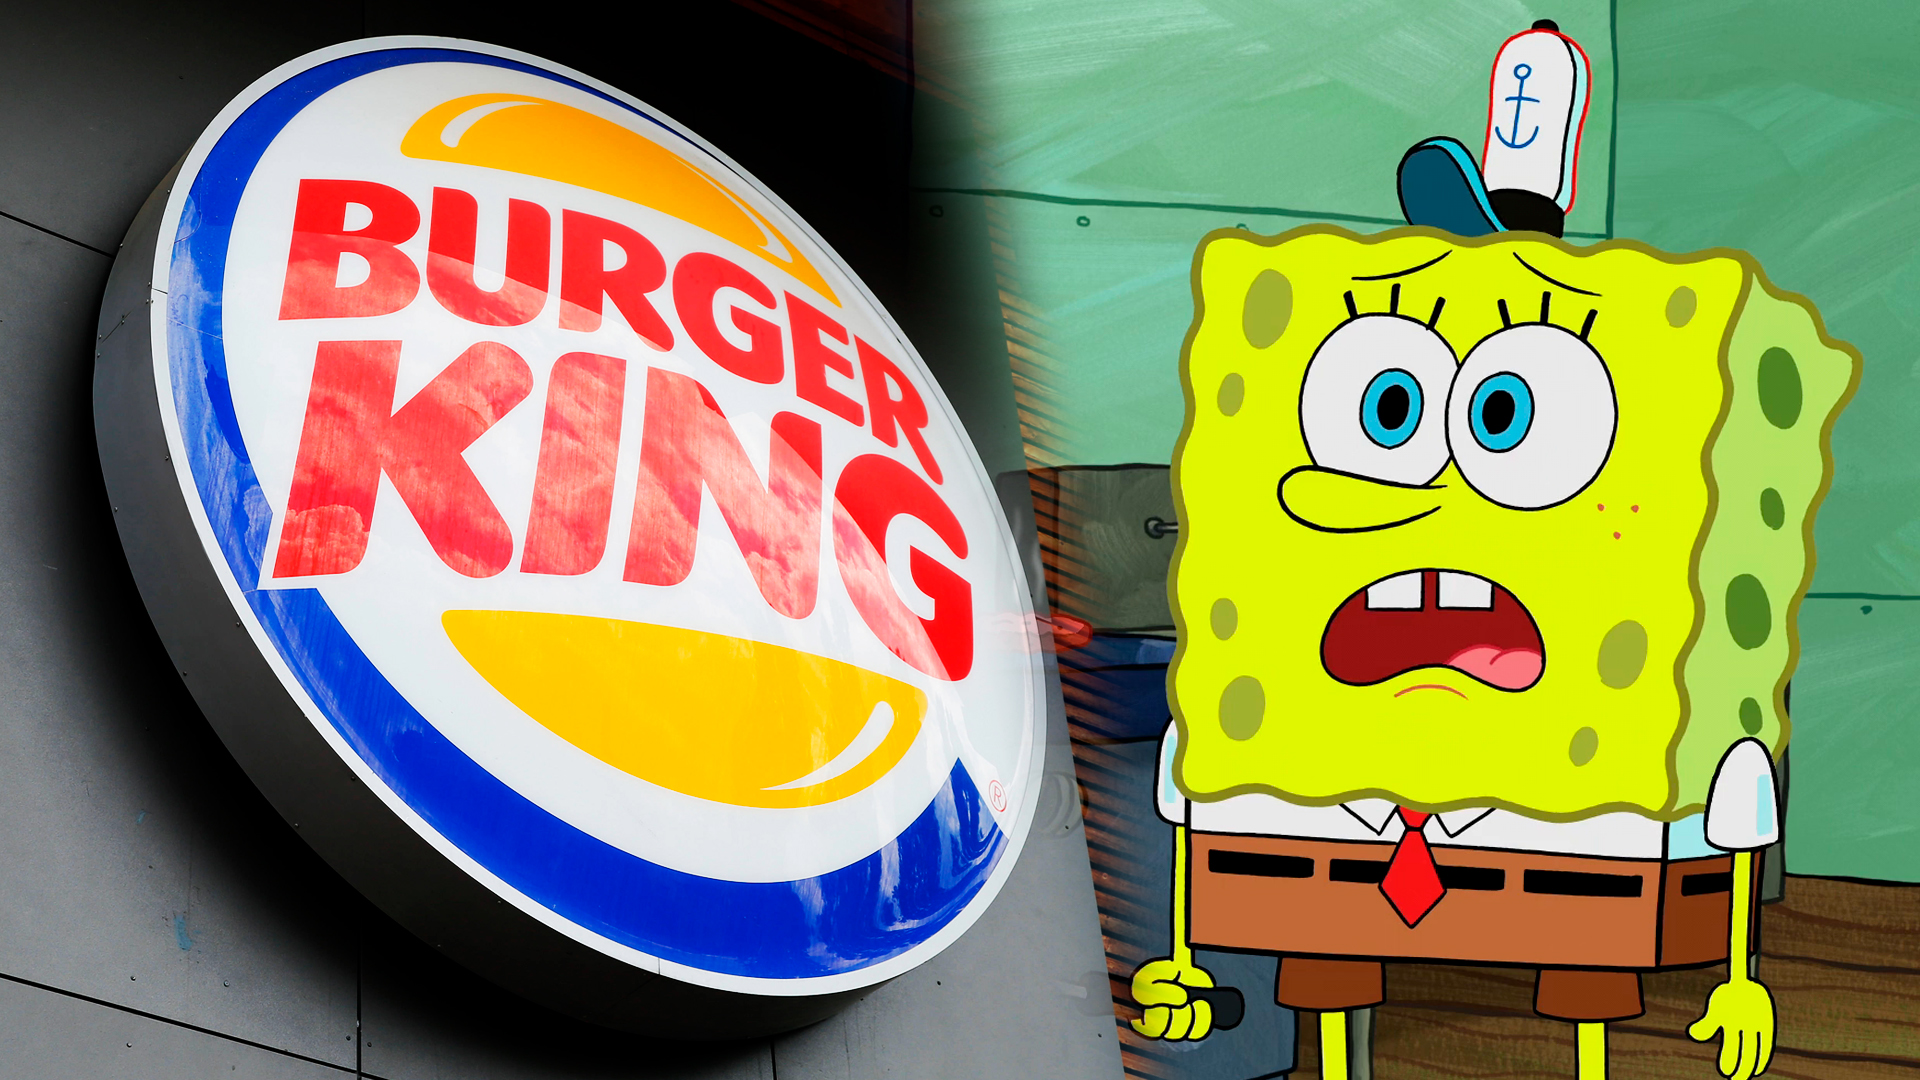 Как Burger King използва Спондж Боб Квадратни гащи толкова погрешно